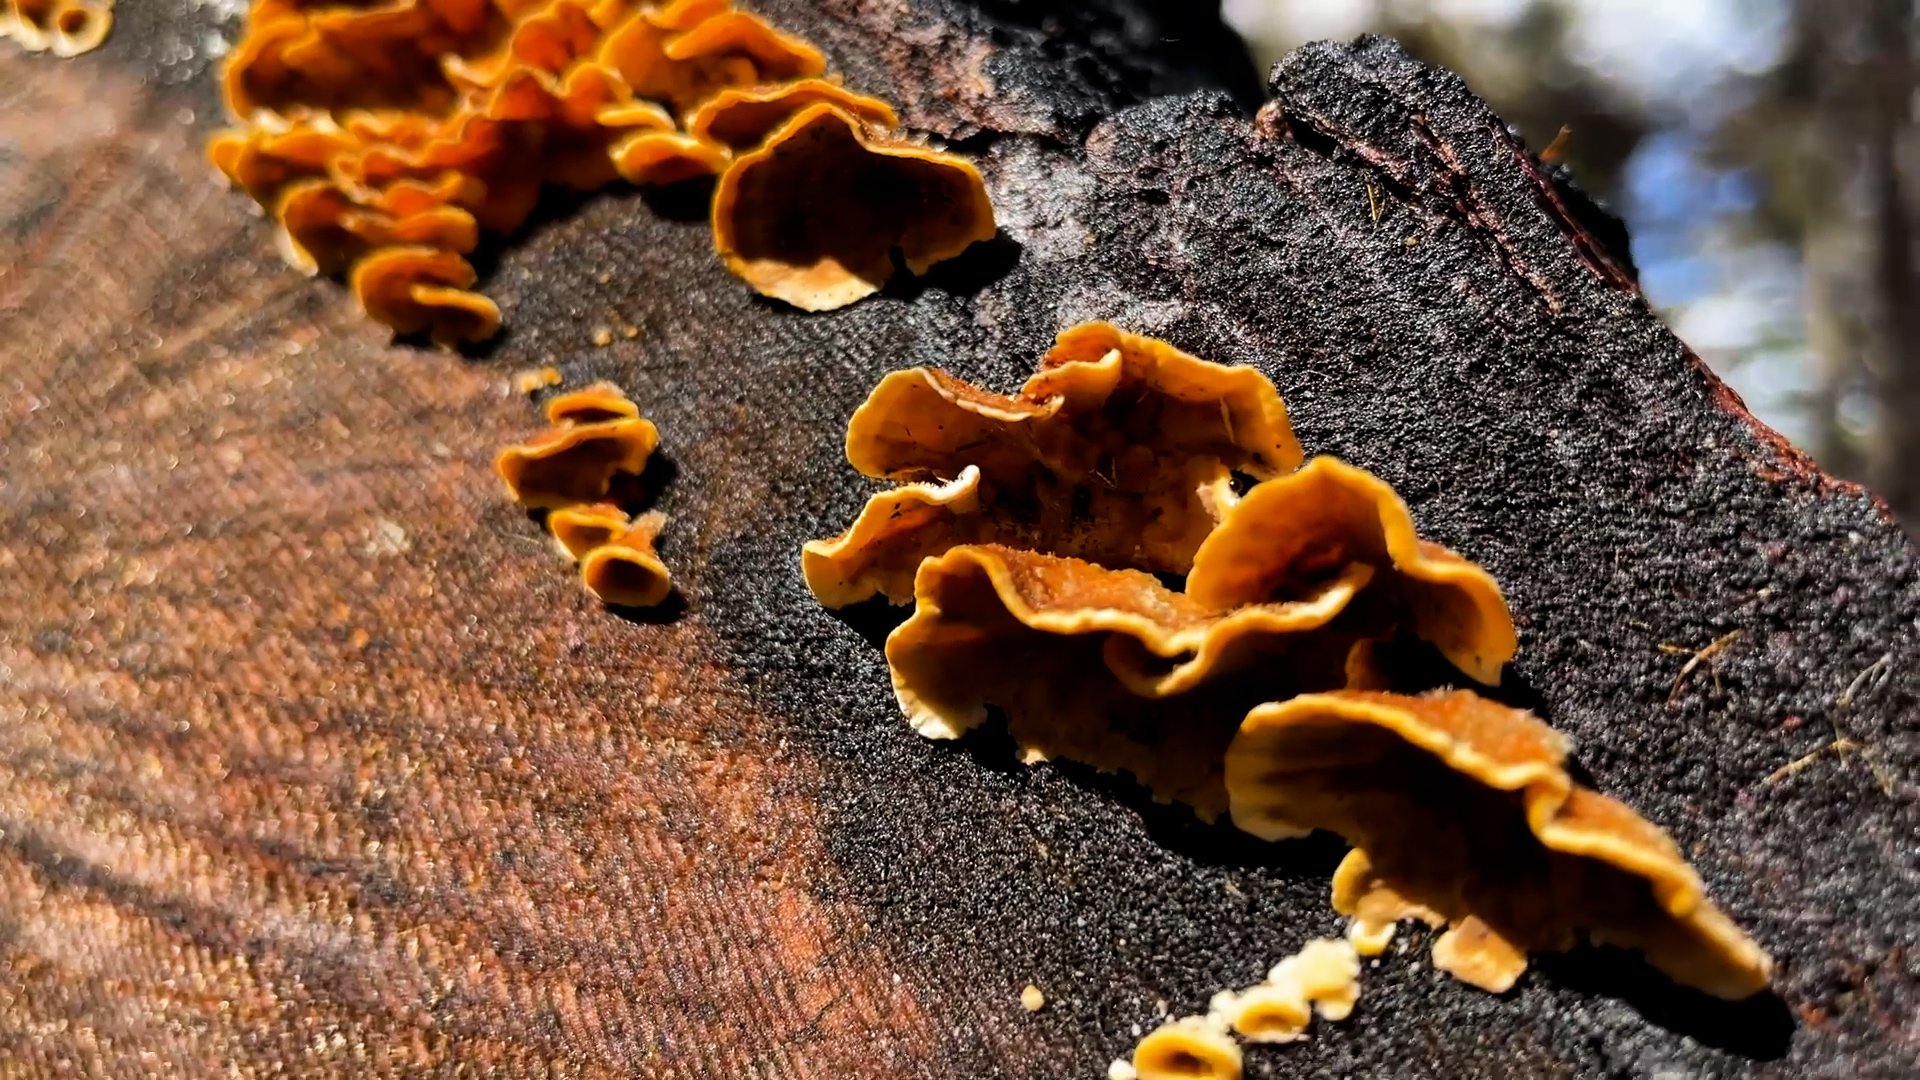 orange fungi on burnt redwood.jpg